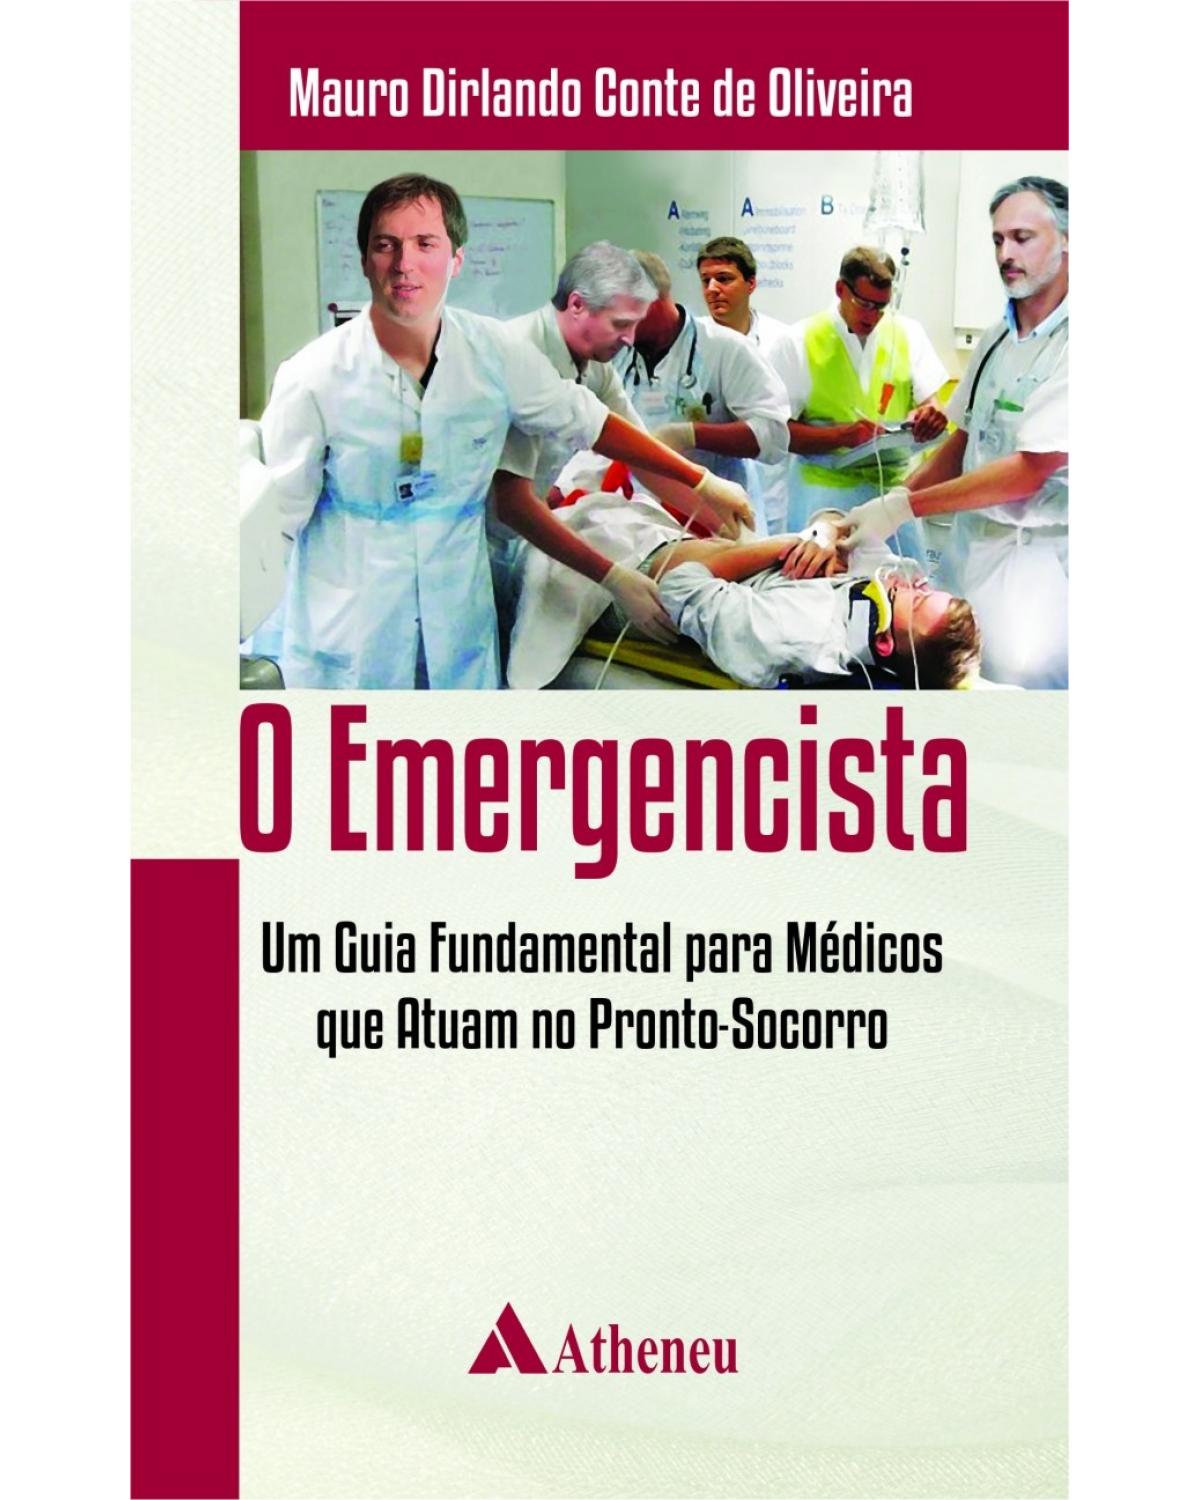 O emergencista - Um guia fundamental para médicos que atuam no pronto-socorro - 1ª Edição | 2014